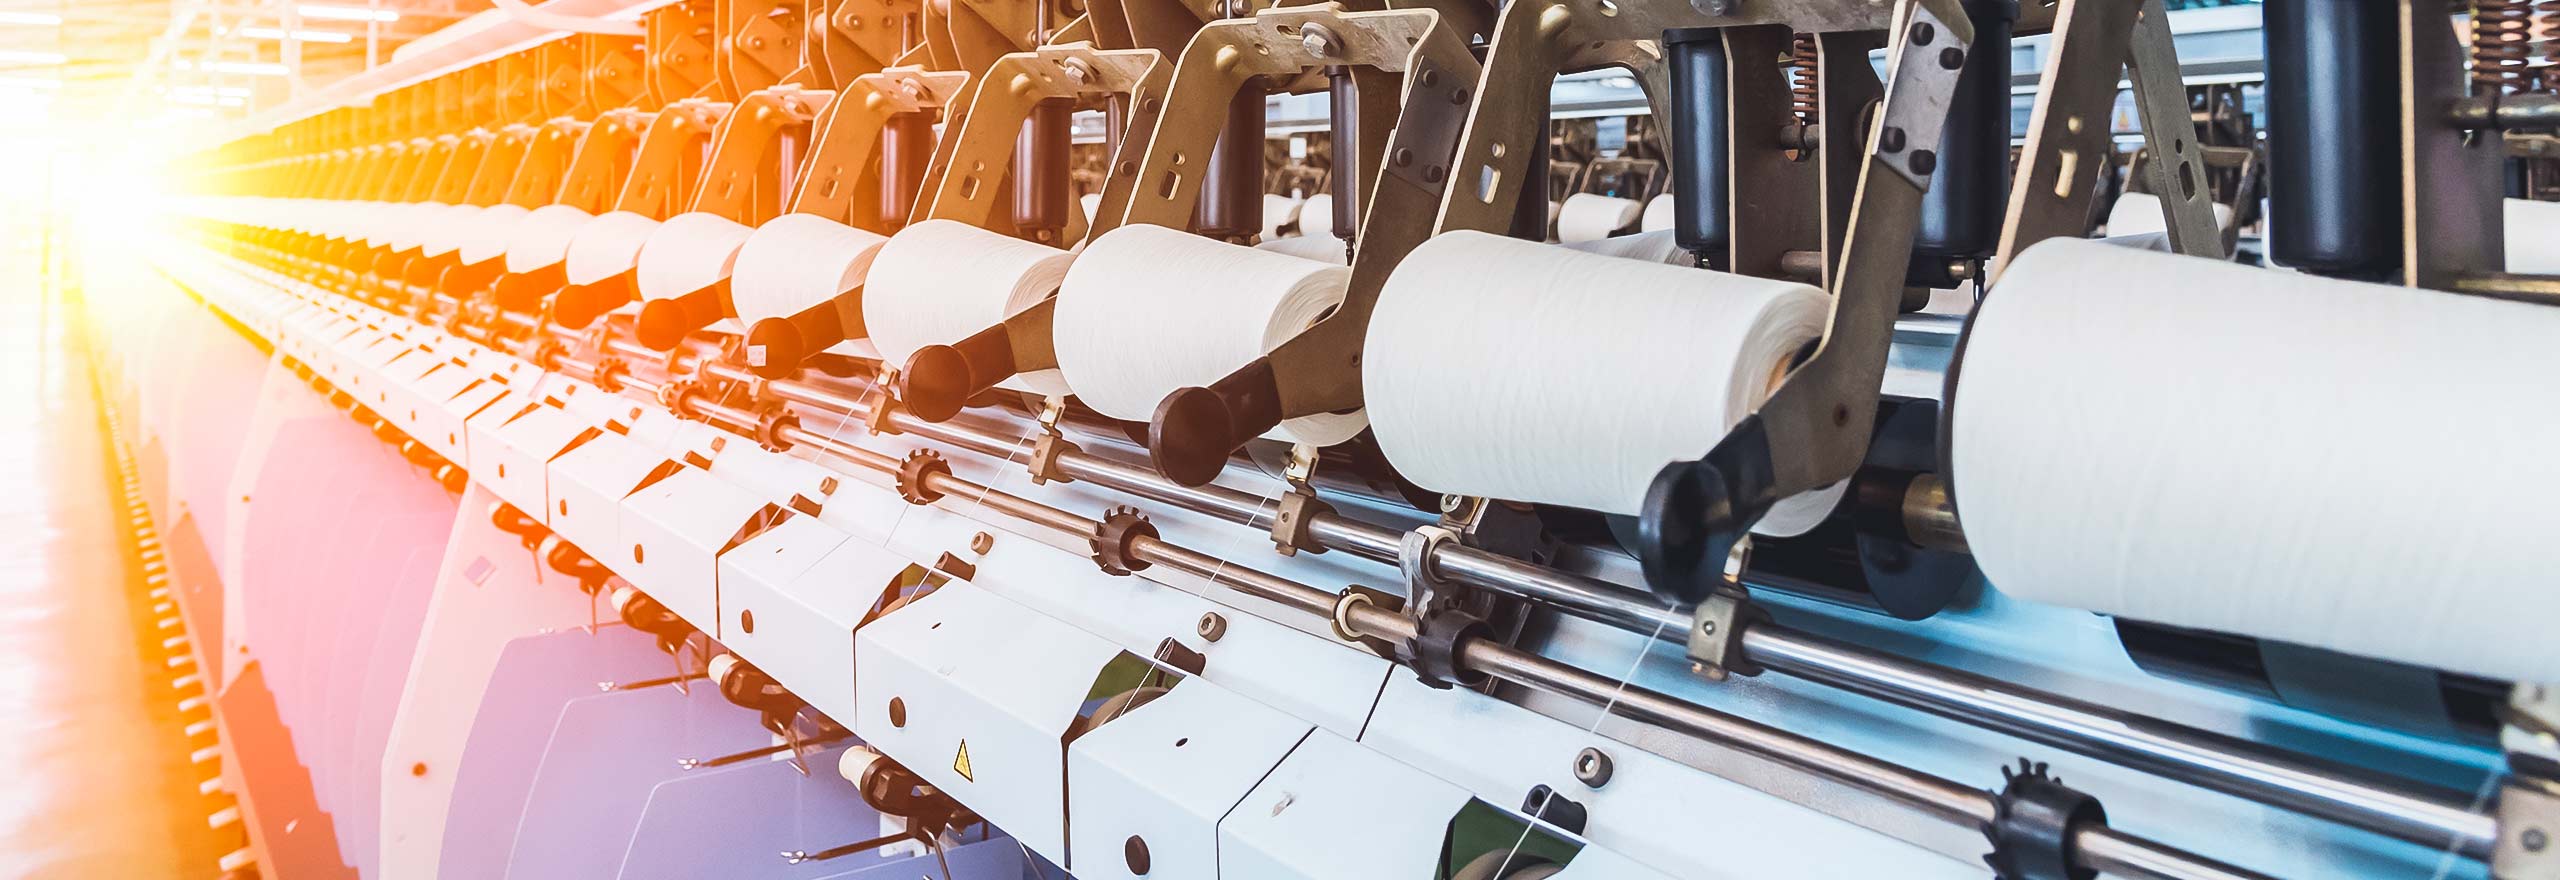 Producción de toallas de papel en una planta de fabricación